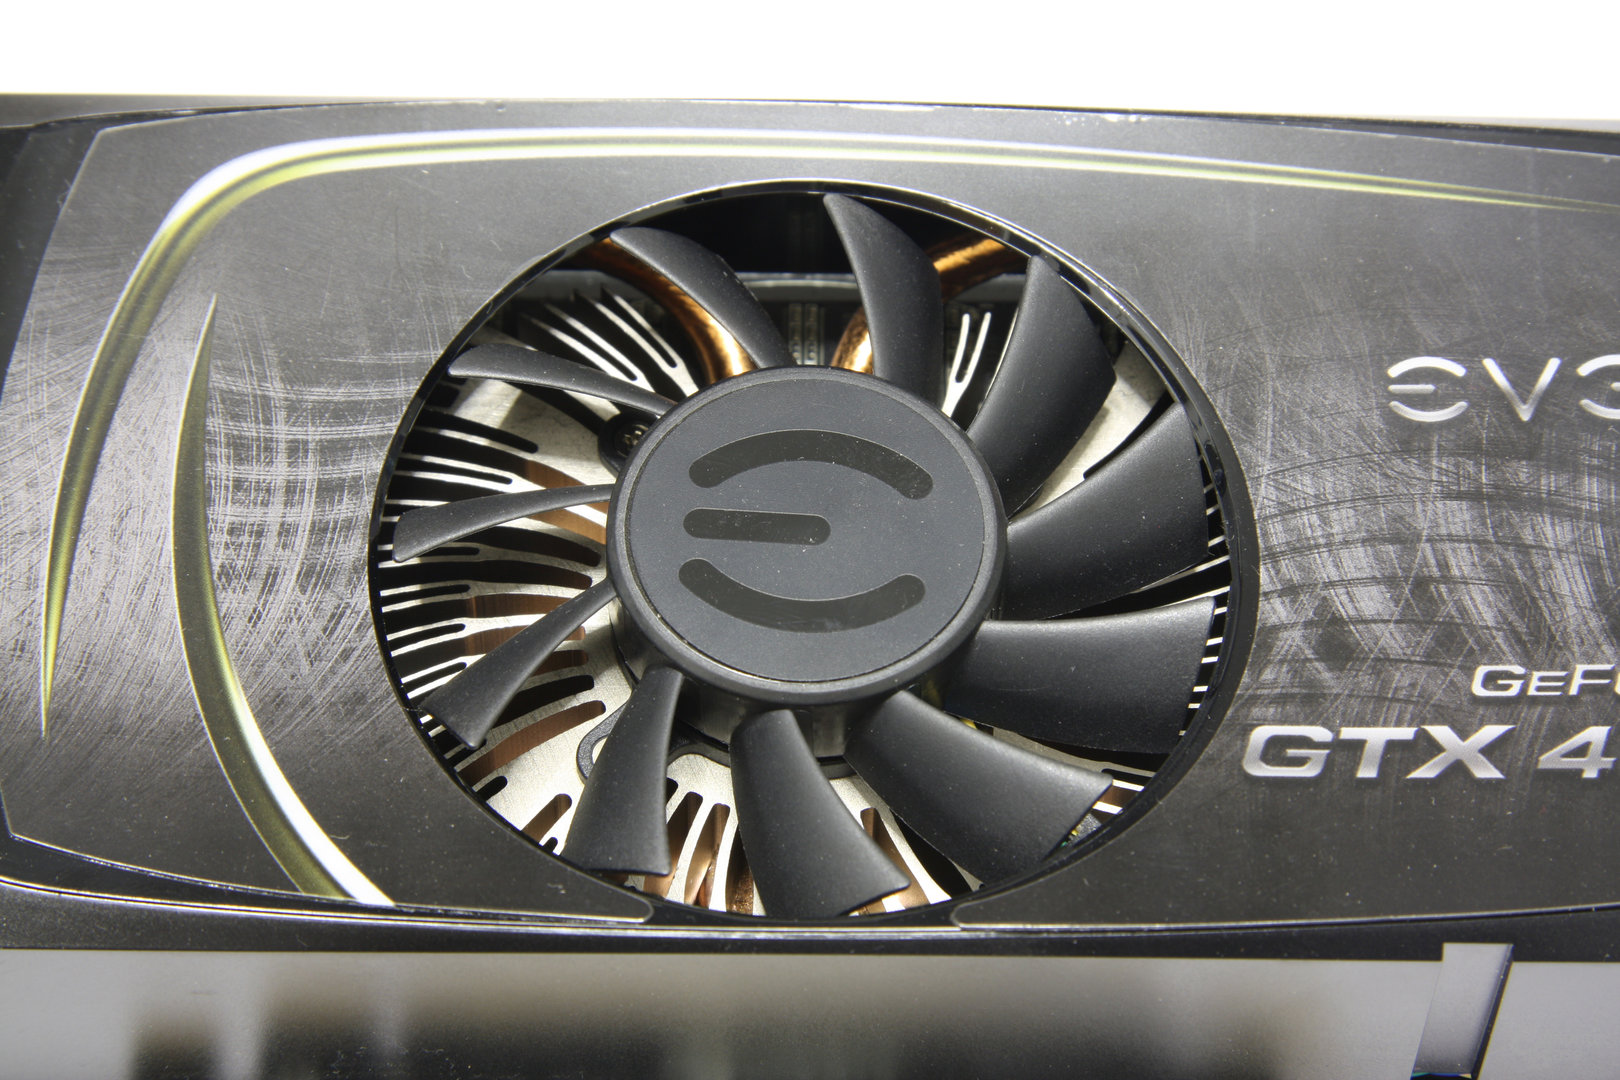 GeForce GTX 460 Lüfter